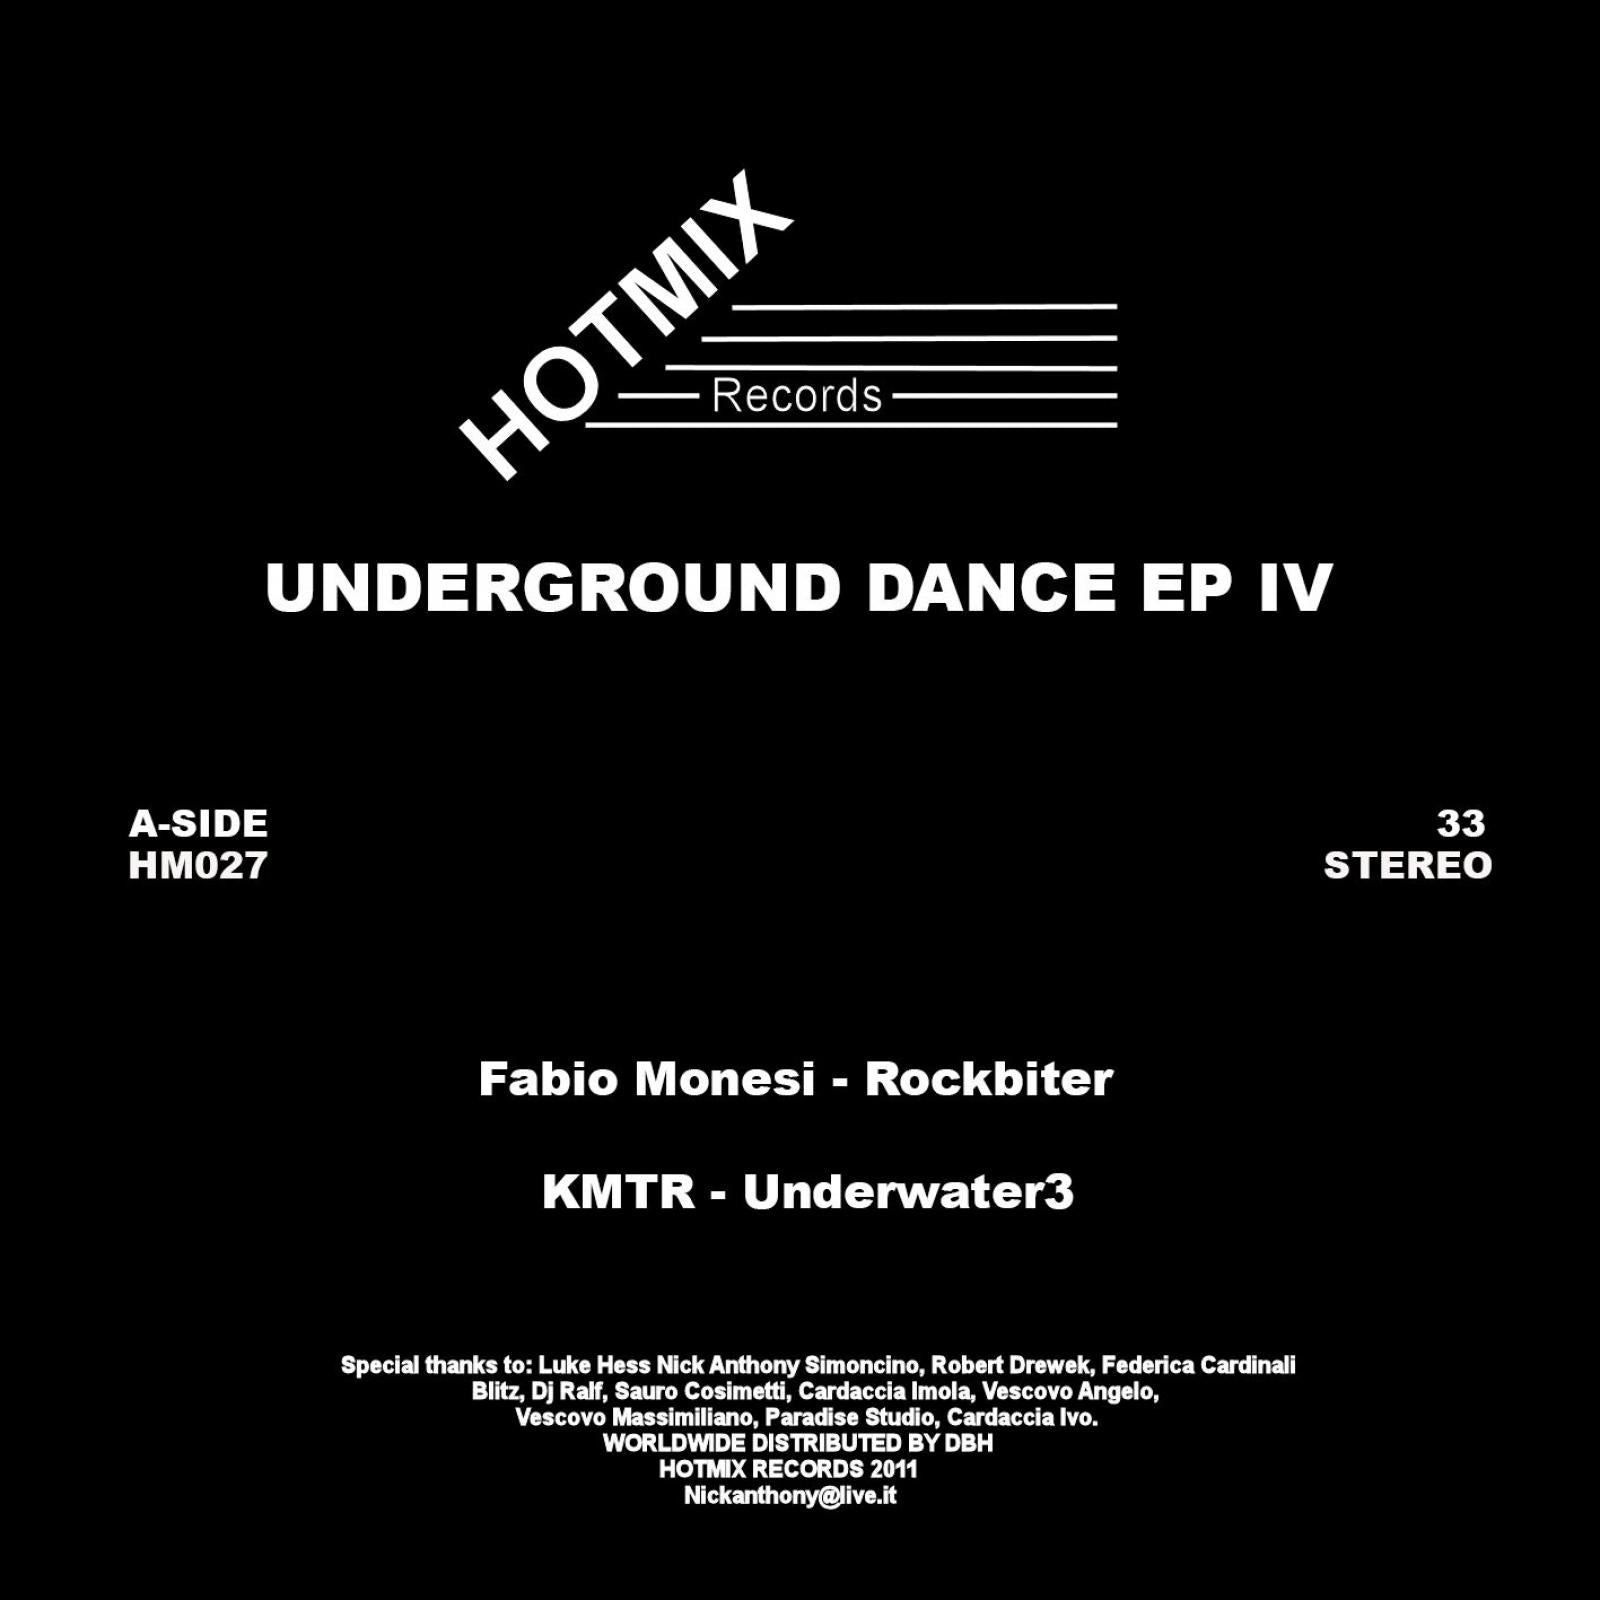 Underground Dance EP IV